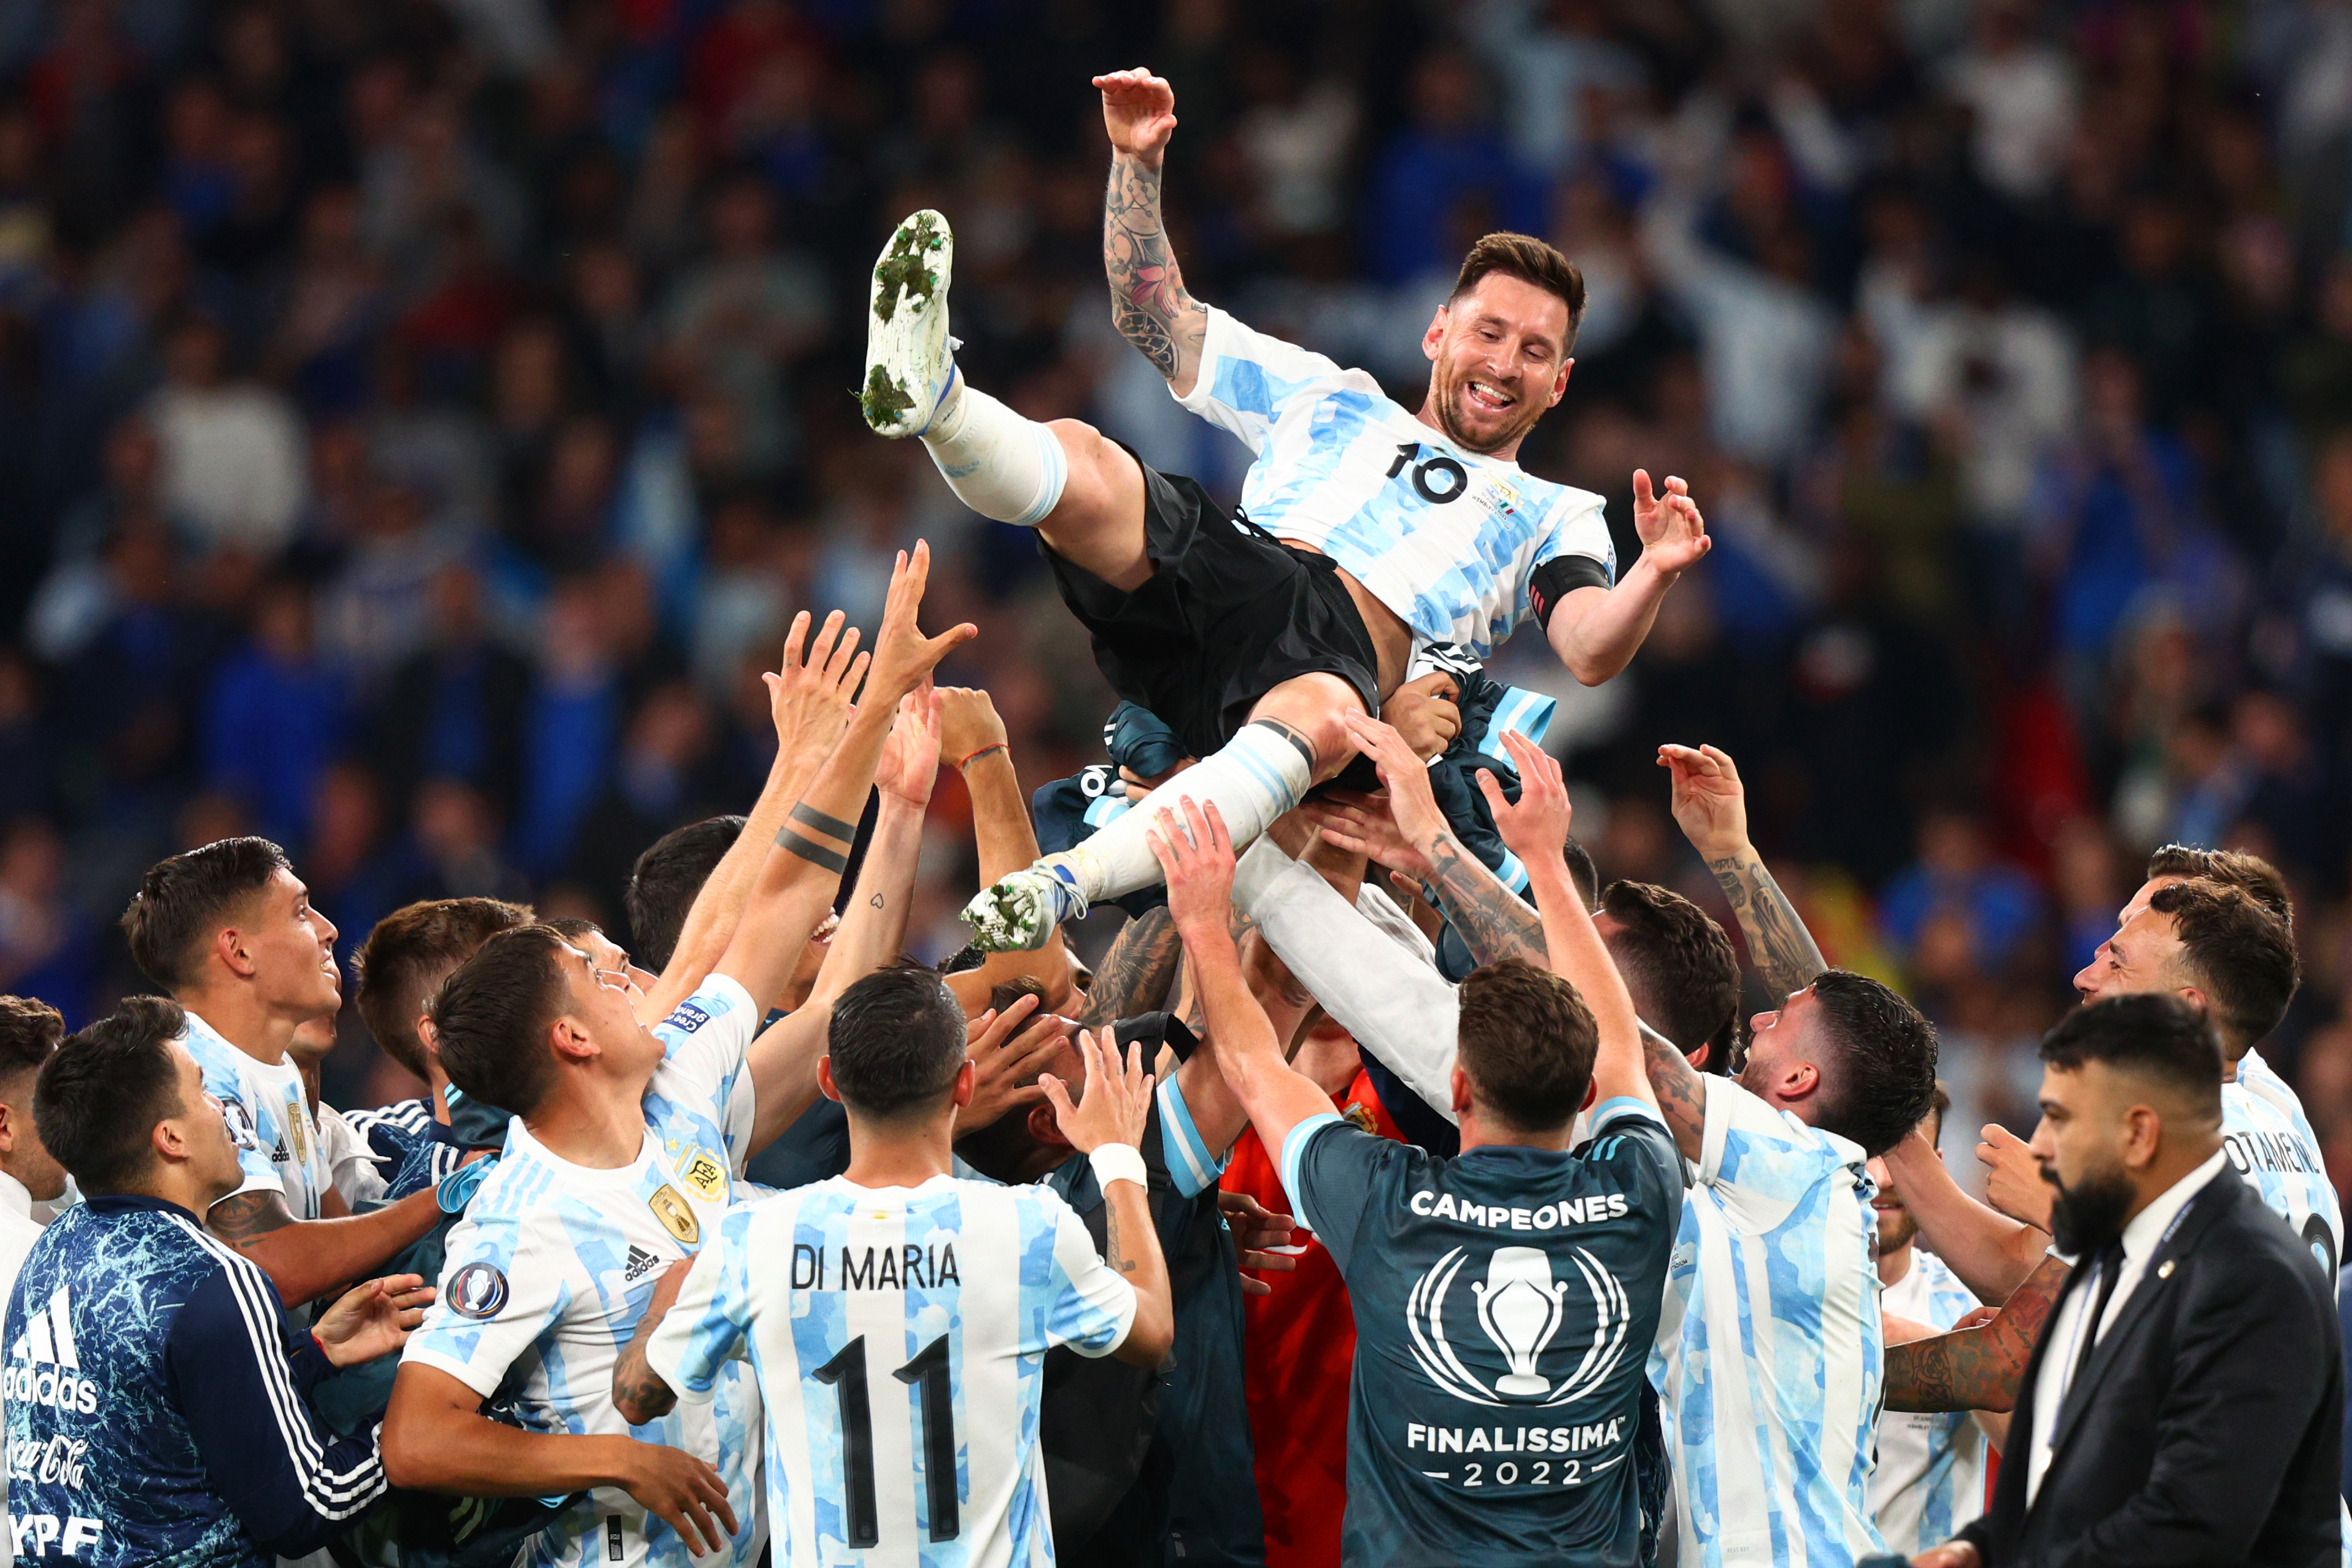 Đội tuyển Argentina đã thể hiện sự tỏa sáng với chiến thắng lớn, nhờ vào những đóng góp của các cầu thủ xuất sắc như Messi. Hãy xem hình ảnh của các cầu thủ Argentina trên sân cỏ và xem họ làm thế nào để giành chiến thắng đầy thuyết phục.